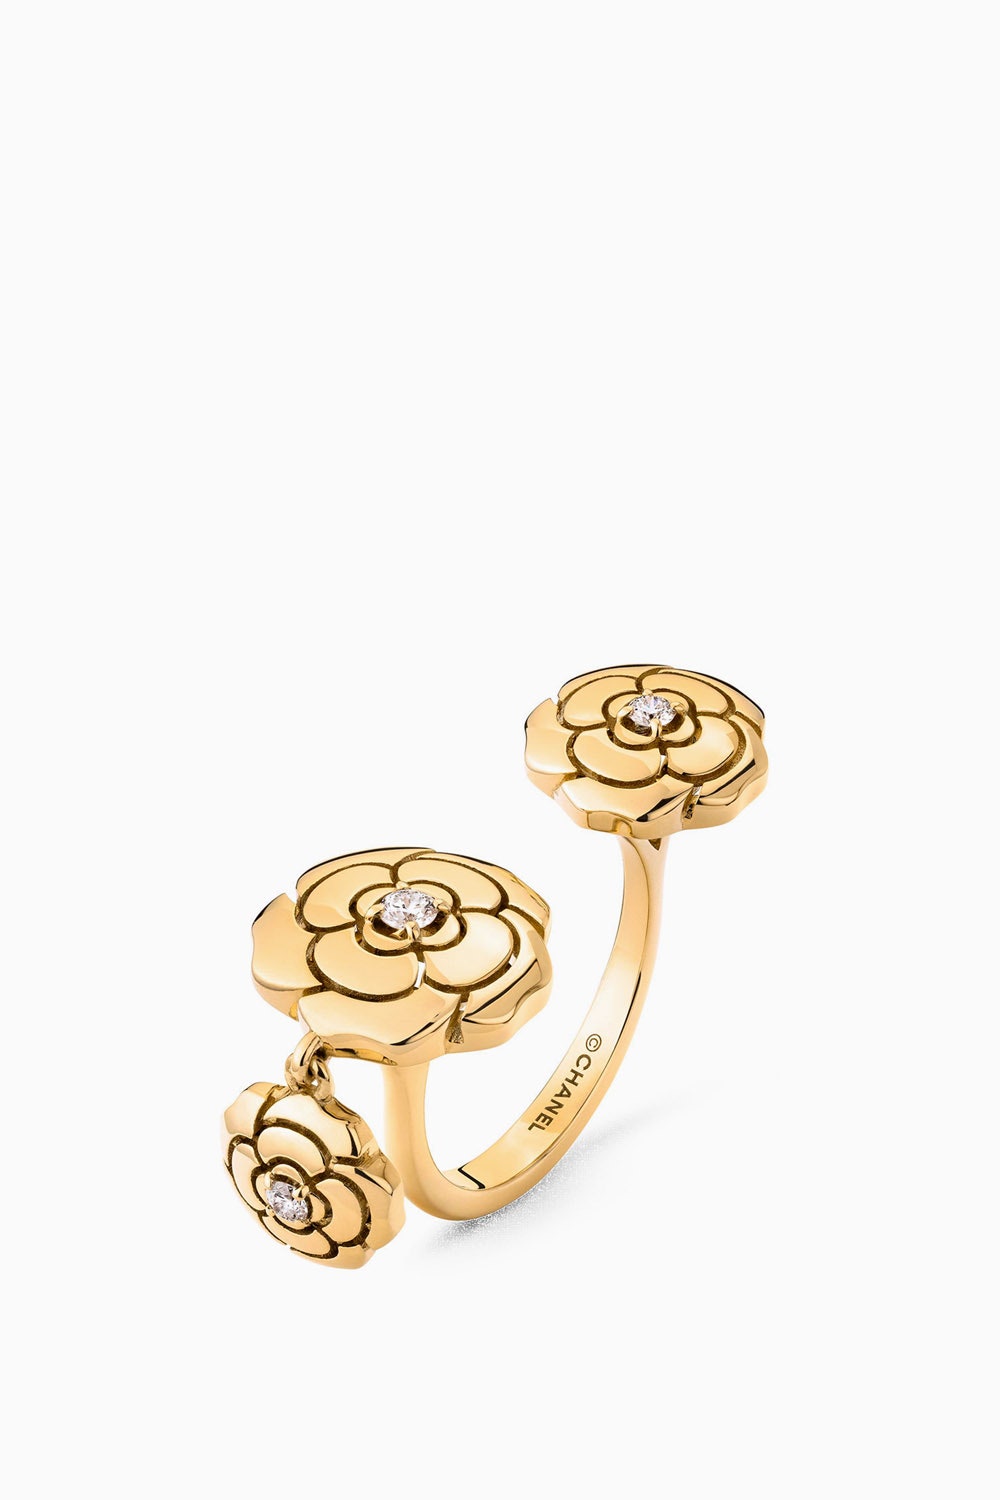 Кольцо Extrait de Camlia Charms из 18каратного желтого золота с бриллиантами Chanel 600600 рублей chanel.com